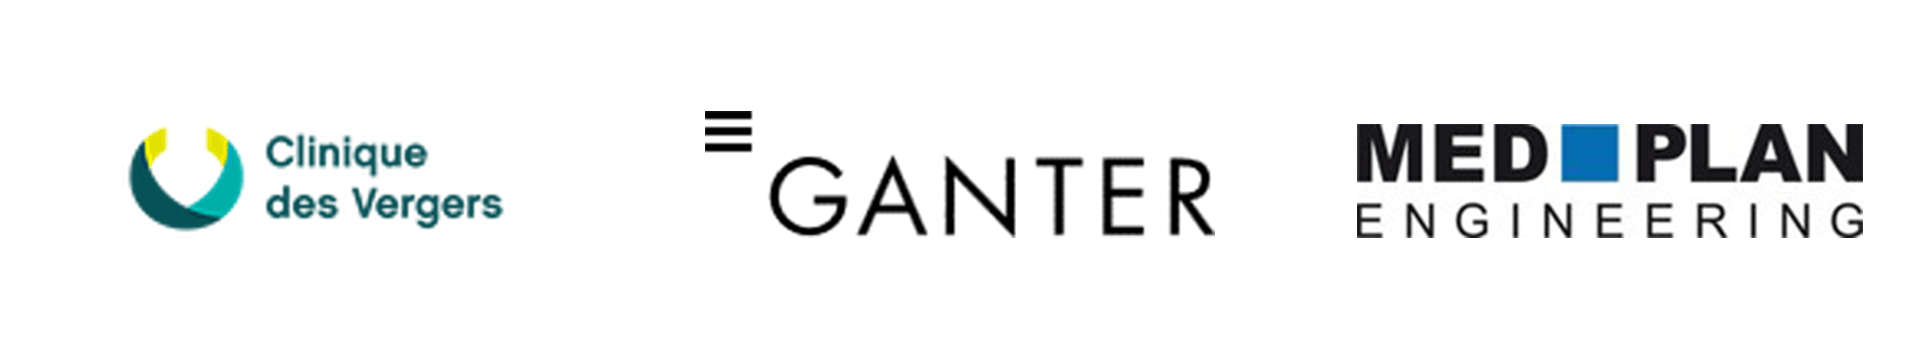 Logo Clinique des Vergers, Ganter, MedPlan Engineering